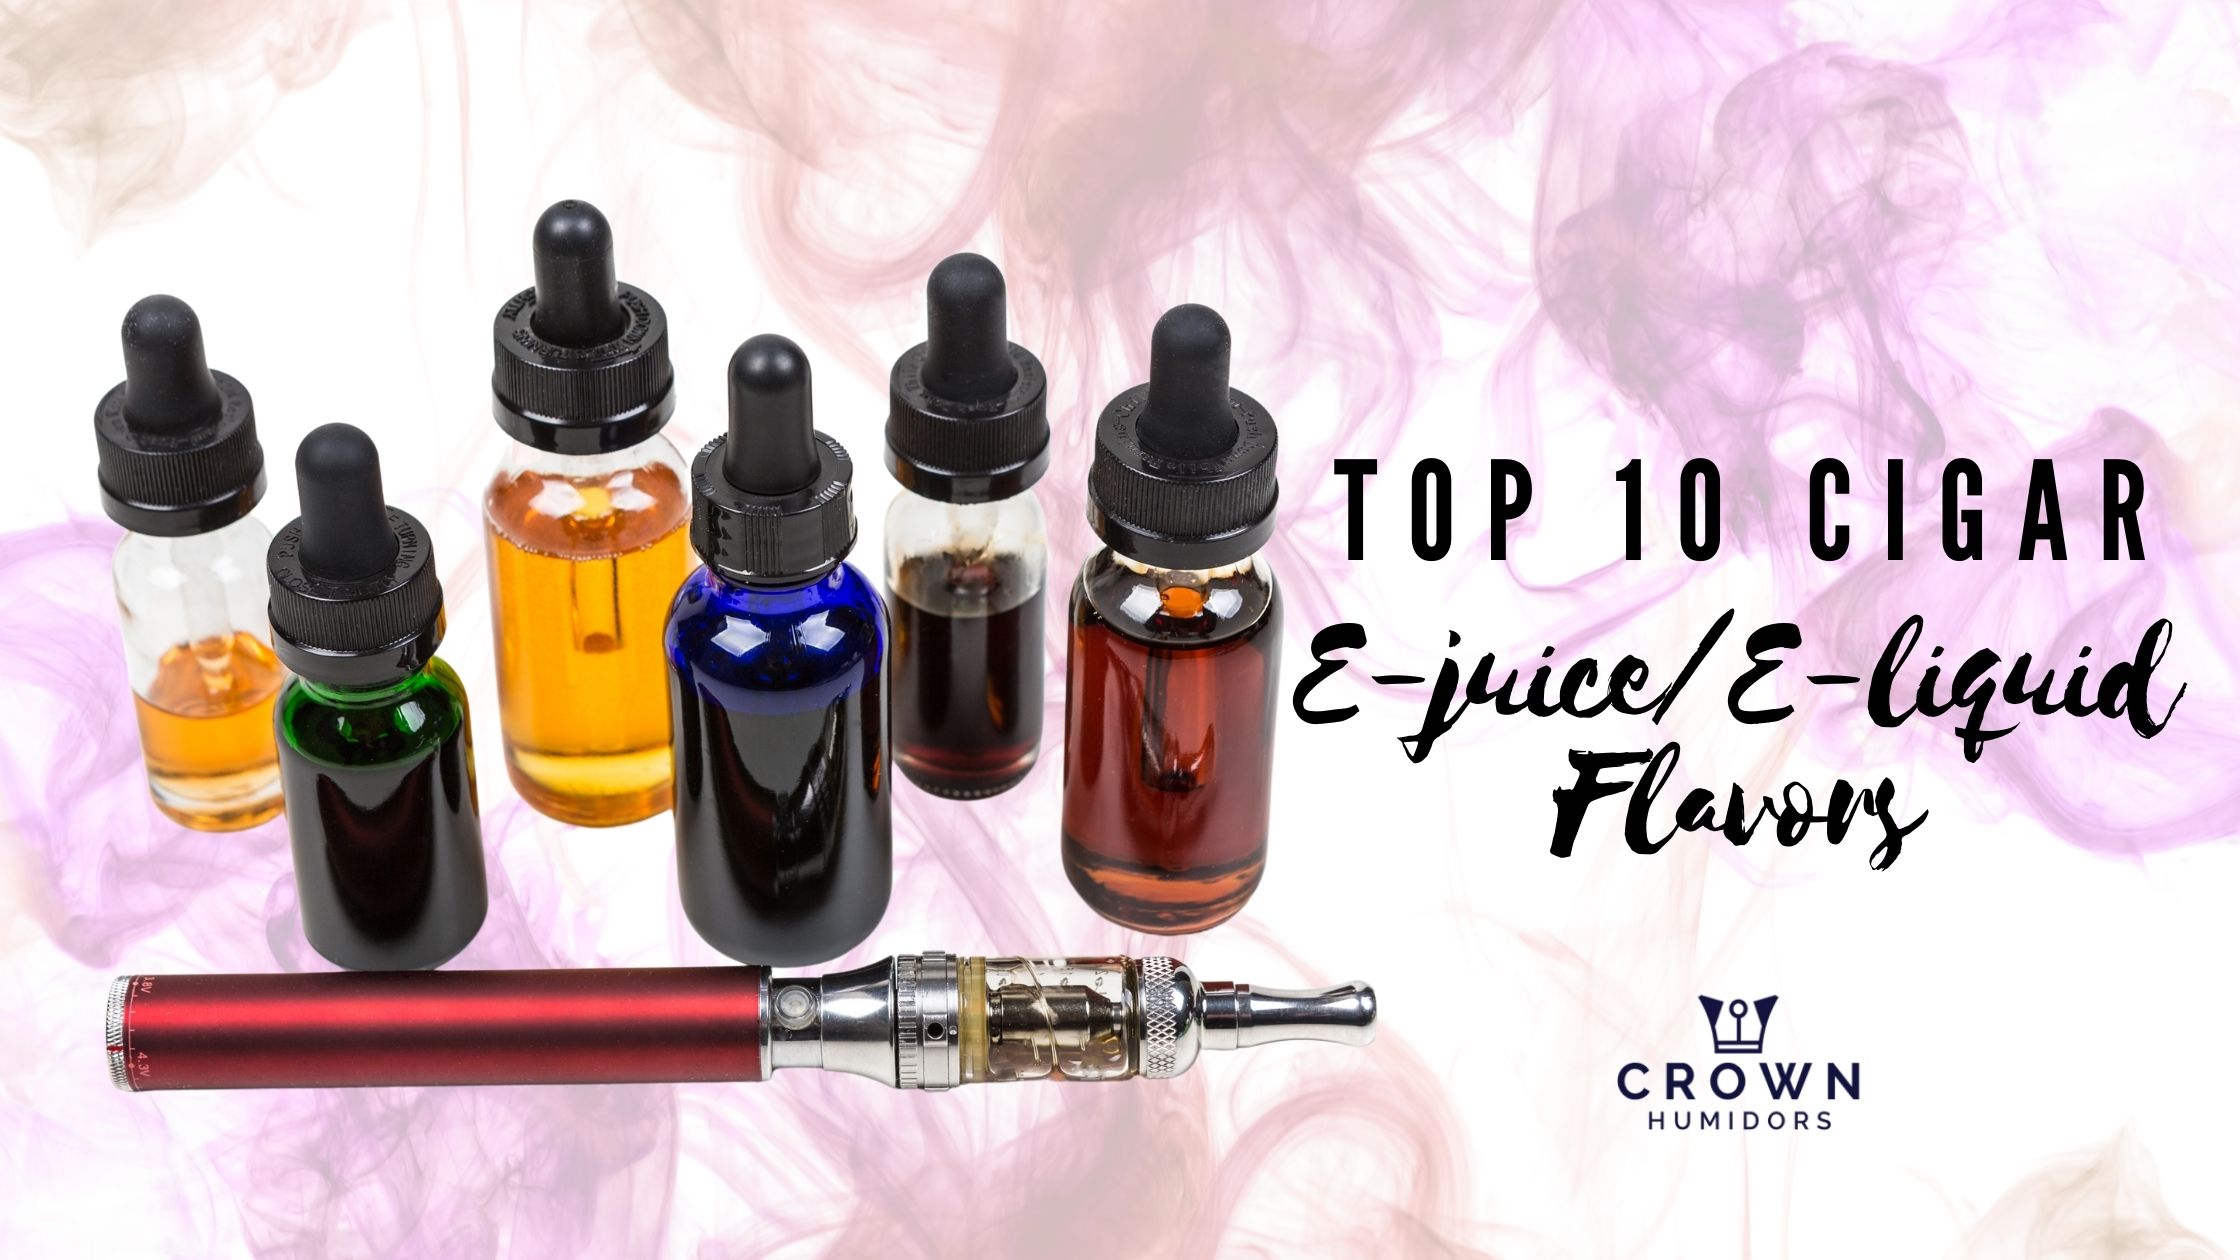 Top 10 Cigar E-Juice/E-Liquid Flavors